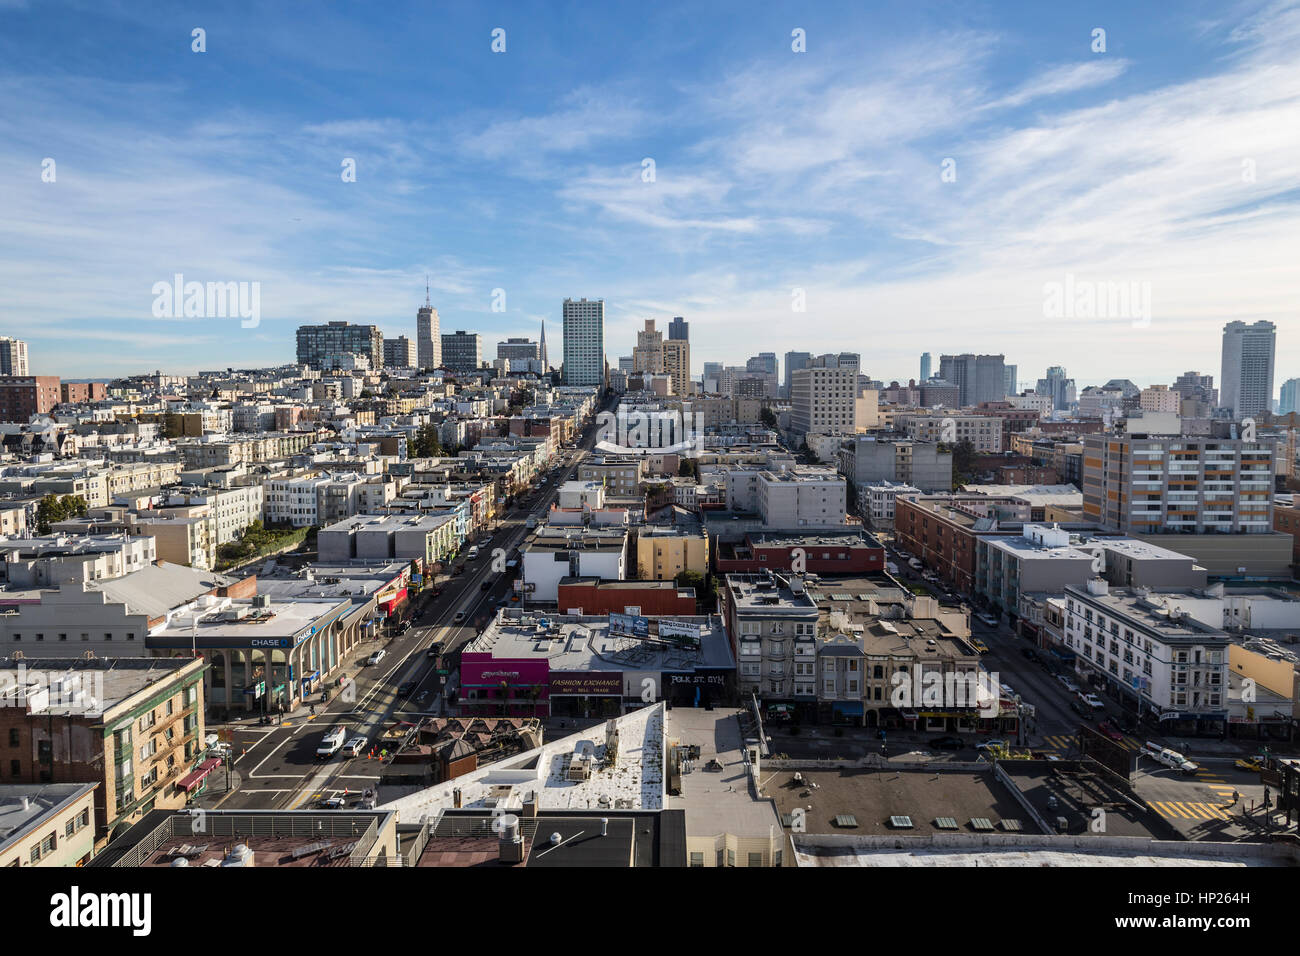 San Francisco, Kalifornien, USA - 15. Januar 2013: Klarer Himmelsblick auf Nob Hill und die Innenstadt von San Francisco. Stockfoto